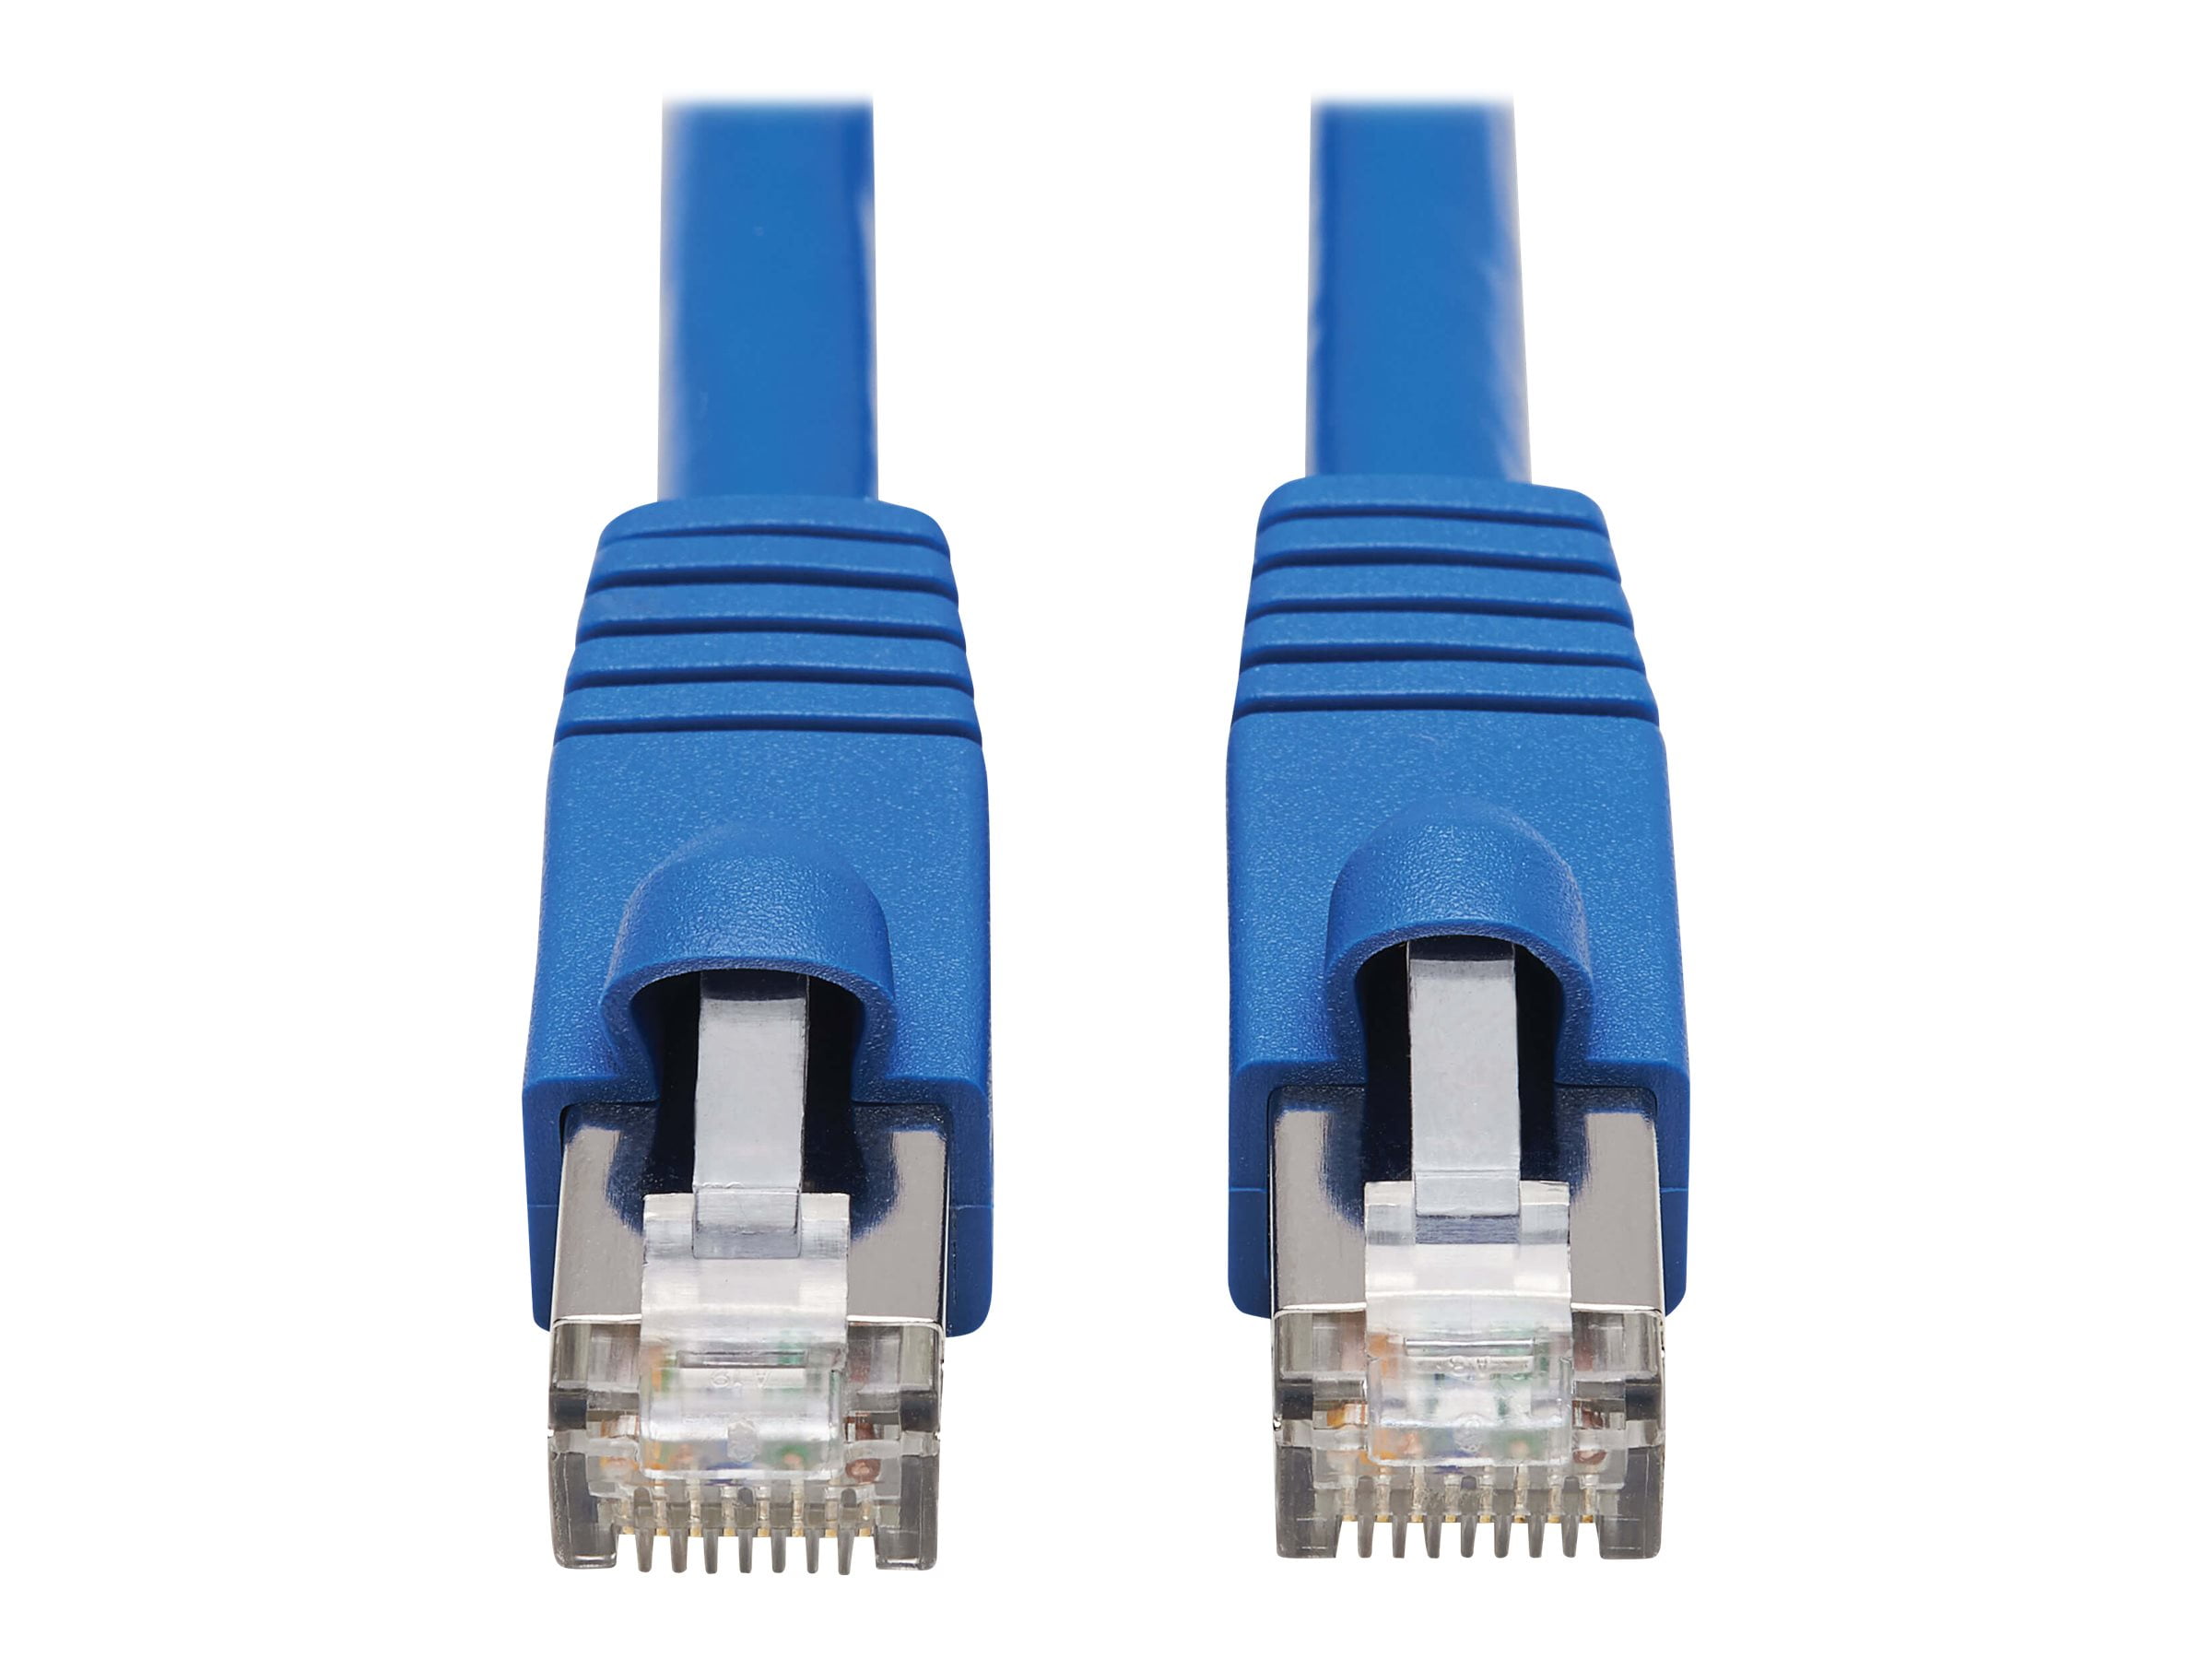 Connection 30. Cat.6 f/UTP 23 AWG rj45 Plug - with Boots. RJ-45 (M). Cable UIM-dom, cat5 Patch Cable, 1 m Blue (dal) (p1bl Patch Cord cat5 1m Blue dal Bus). Промышленный Ethernet кабель.